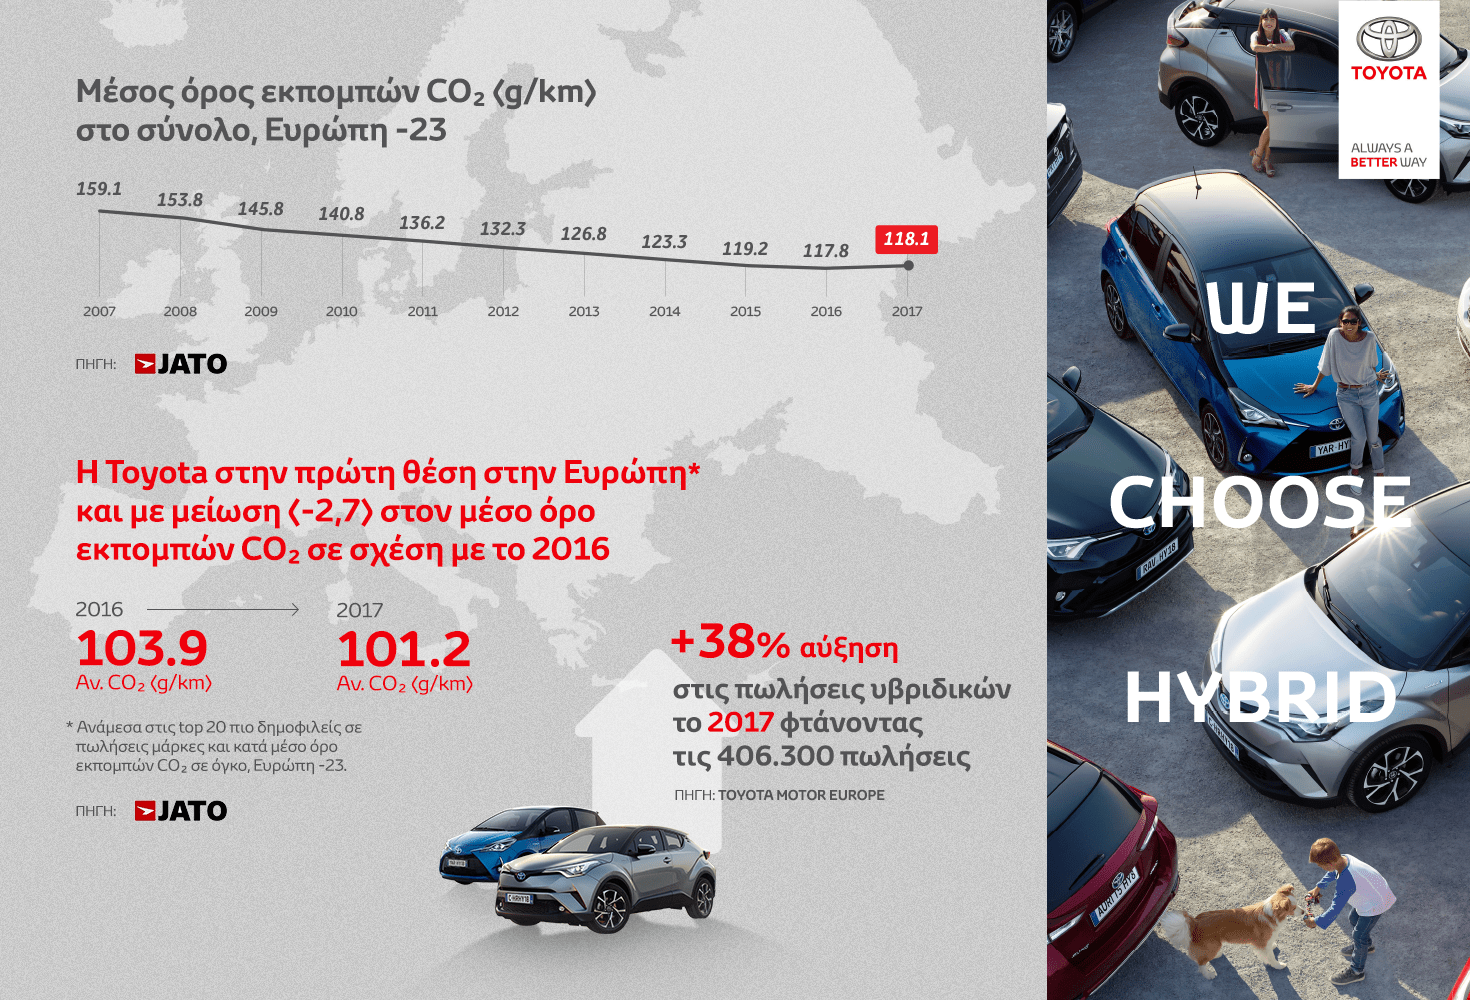 «Καθαρότερη» μάρκα αυτοκινήτων στην Ευρώπη για το 2017 η Toyota